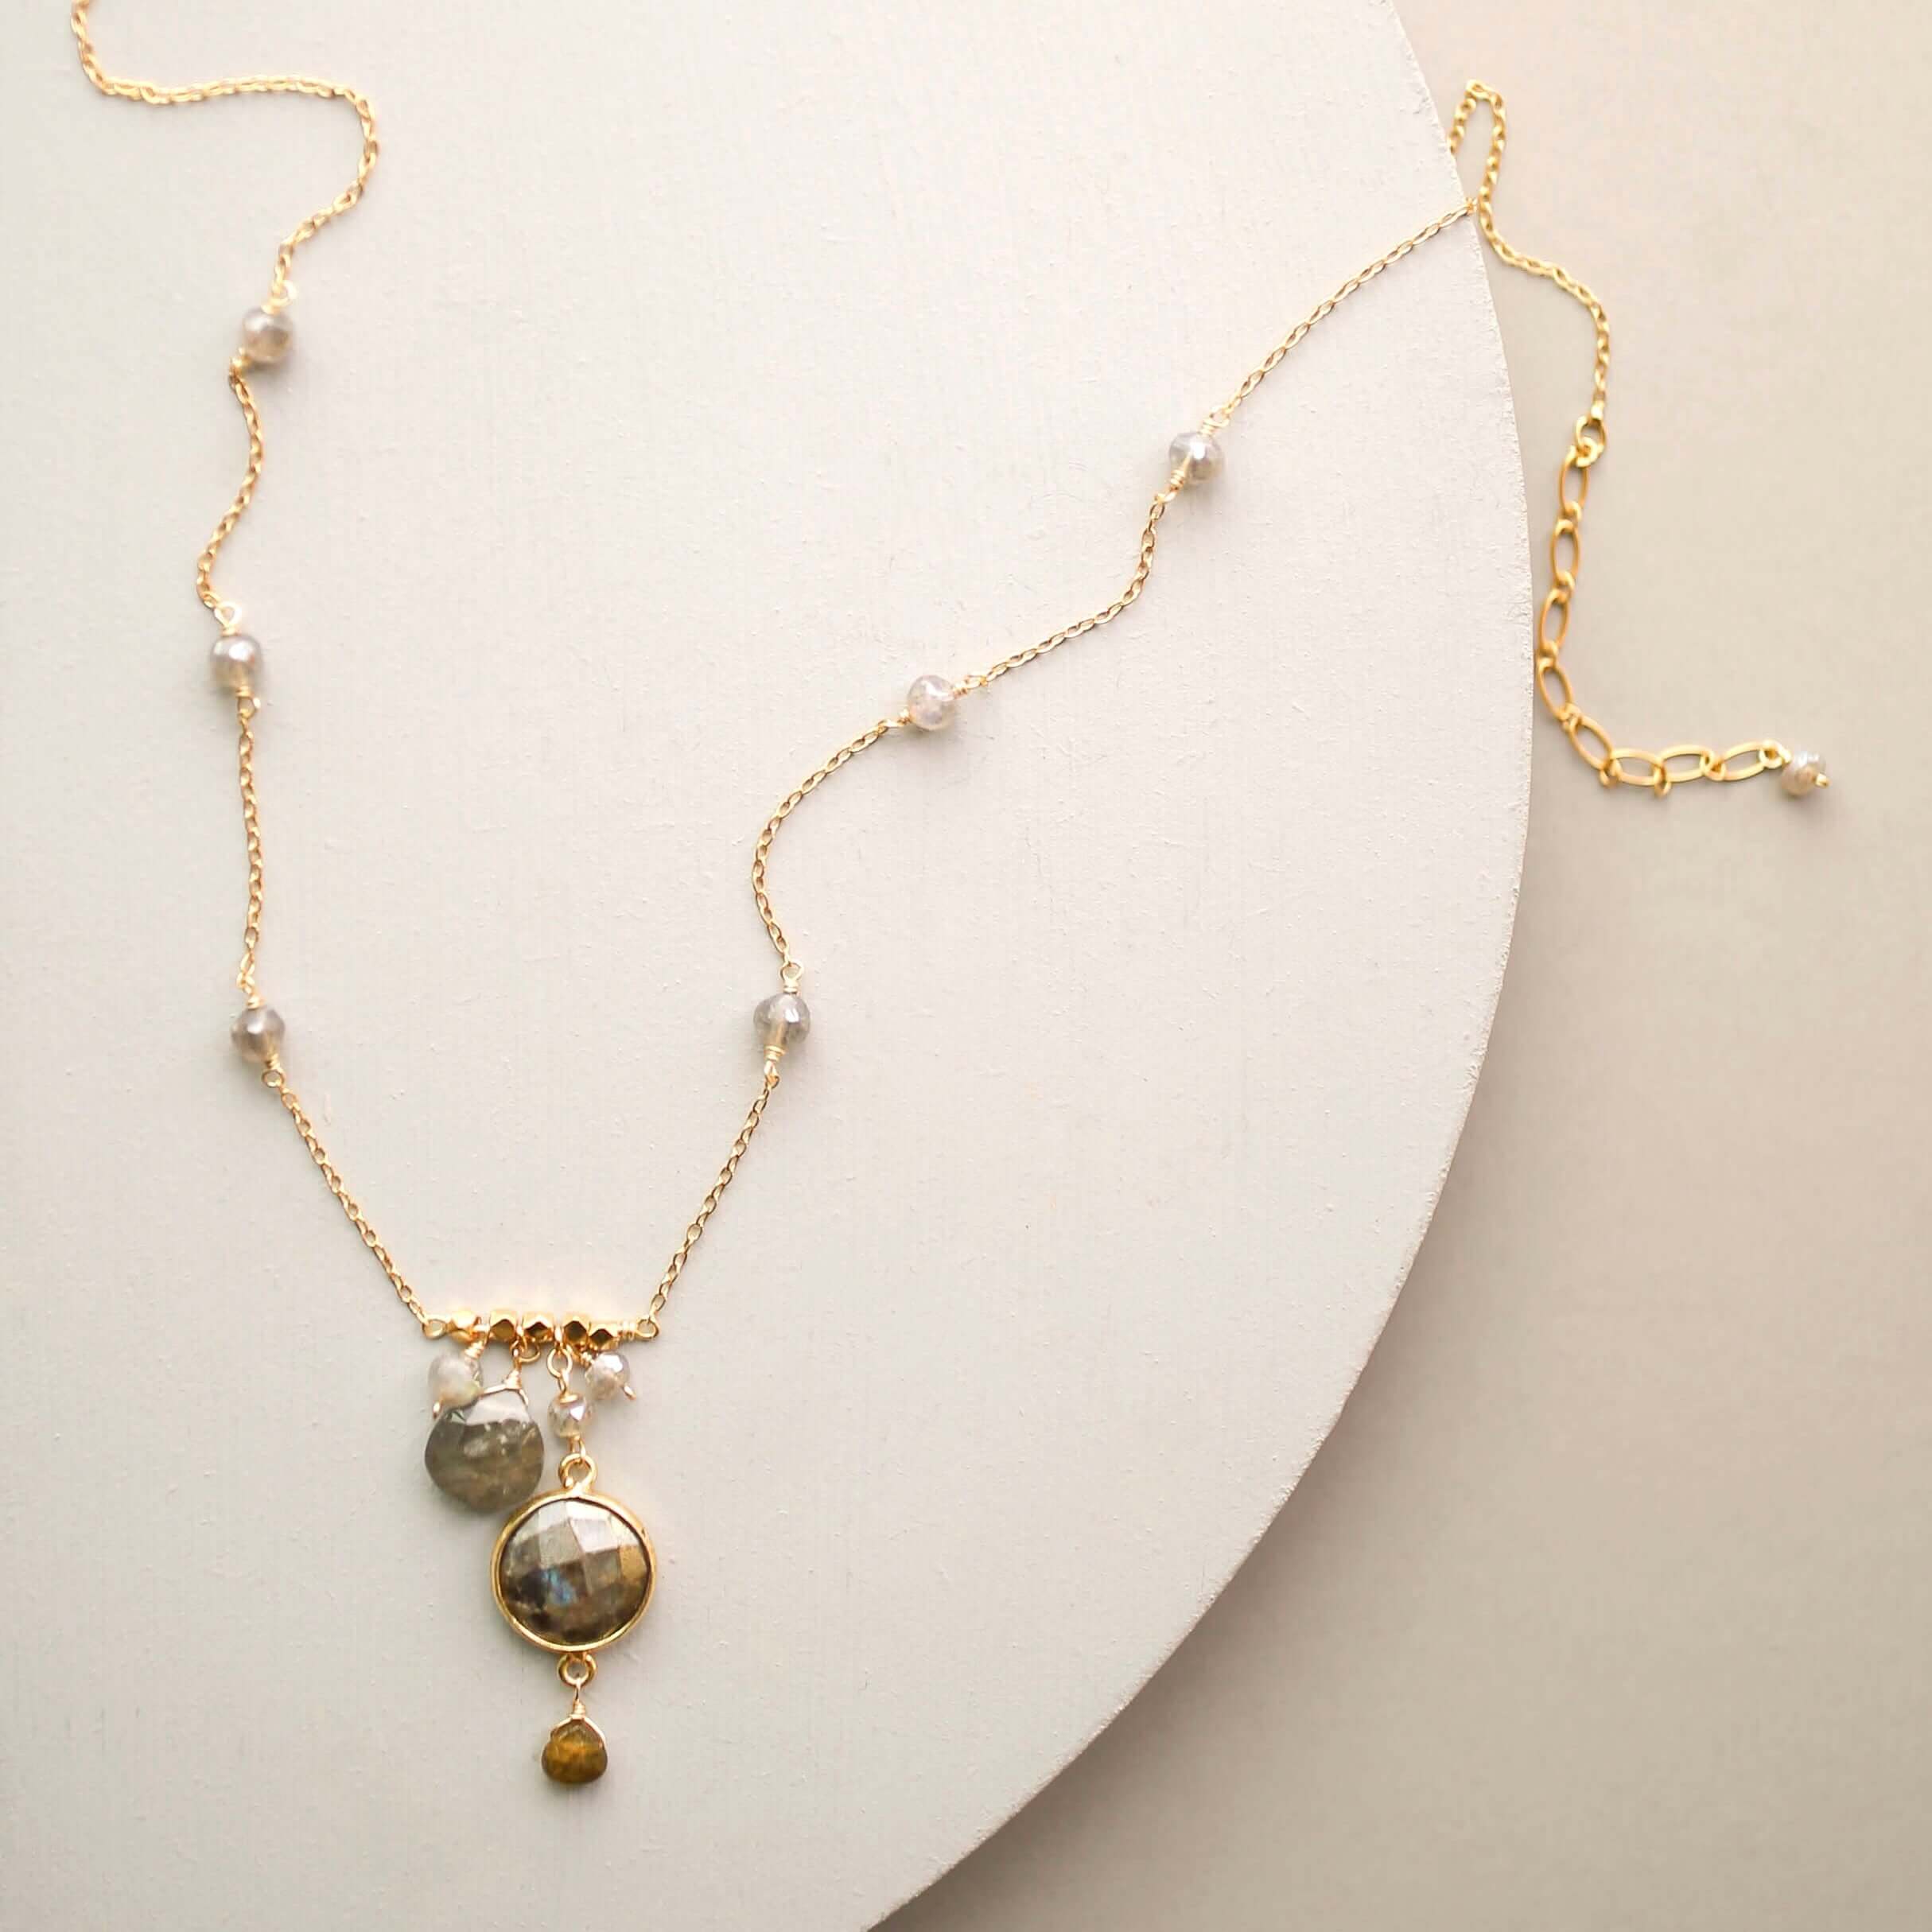 Elegant bezel-set labradorite gemstone necklace with surrounding accents.